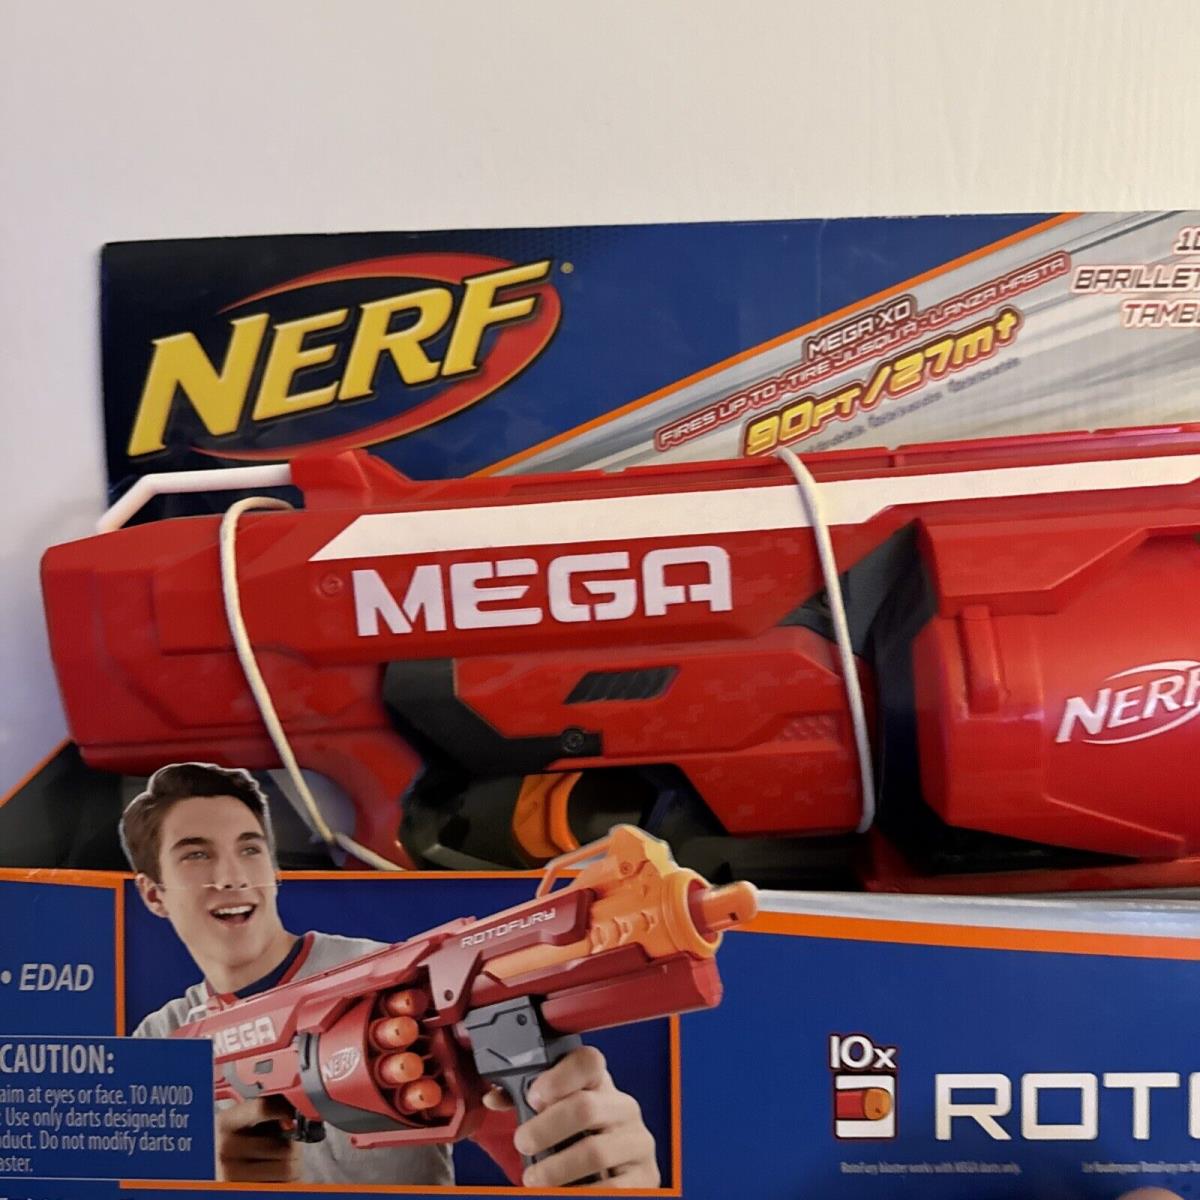 Nerf N-strike Mega Rotofury Blaster 90ft